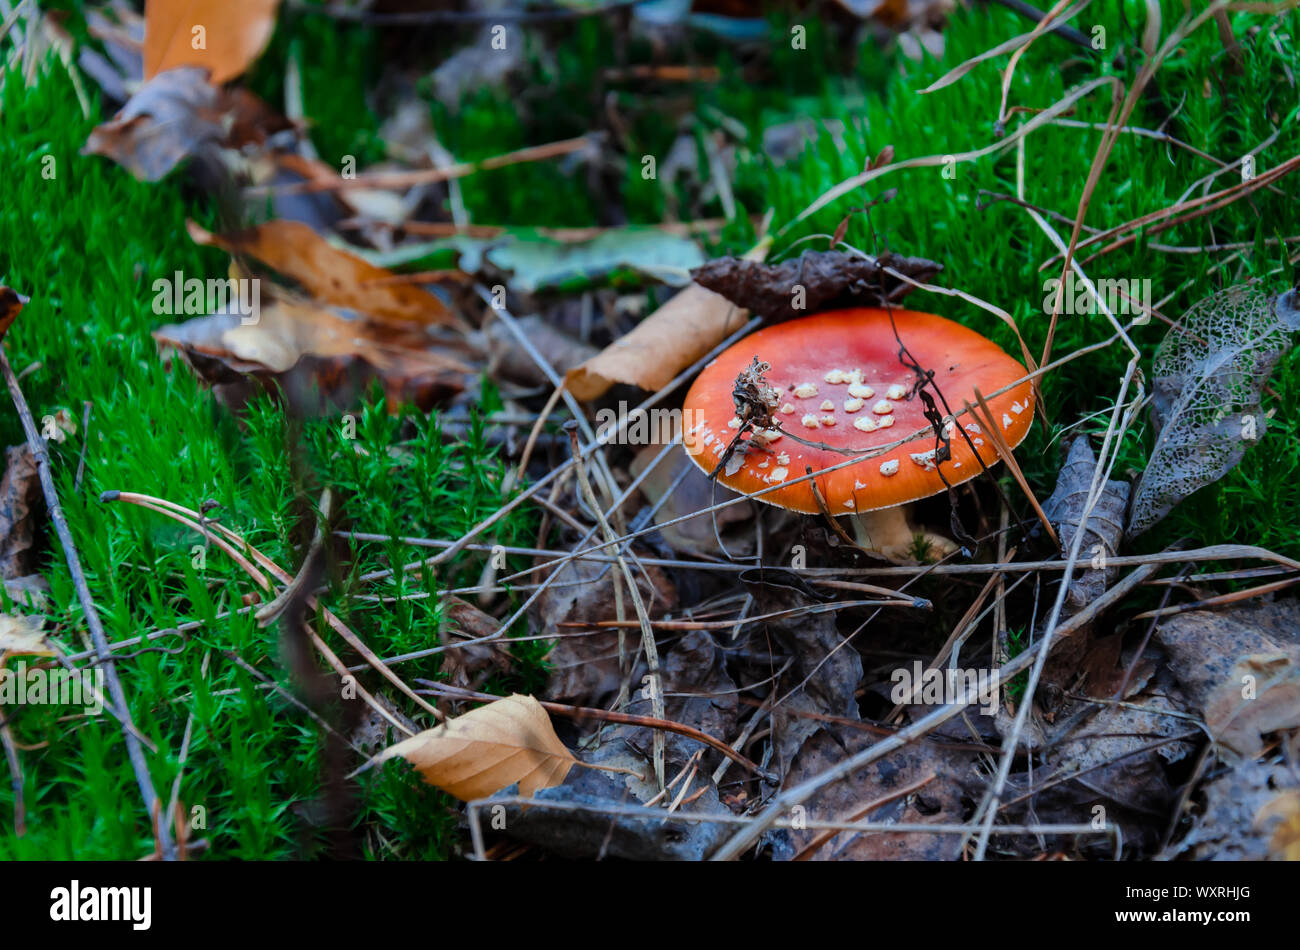 Fungo non è commestibile, fungo con un cappuccio rosso cresce nella foresta, close-up Foto Stock